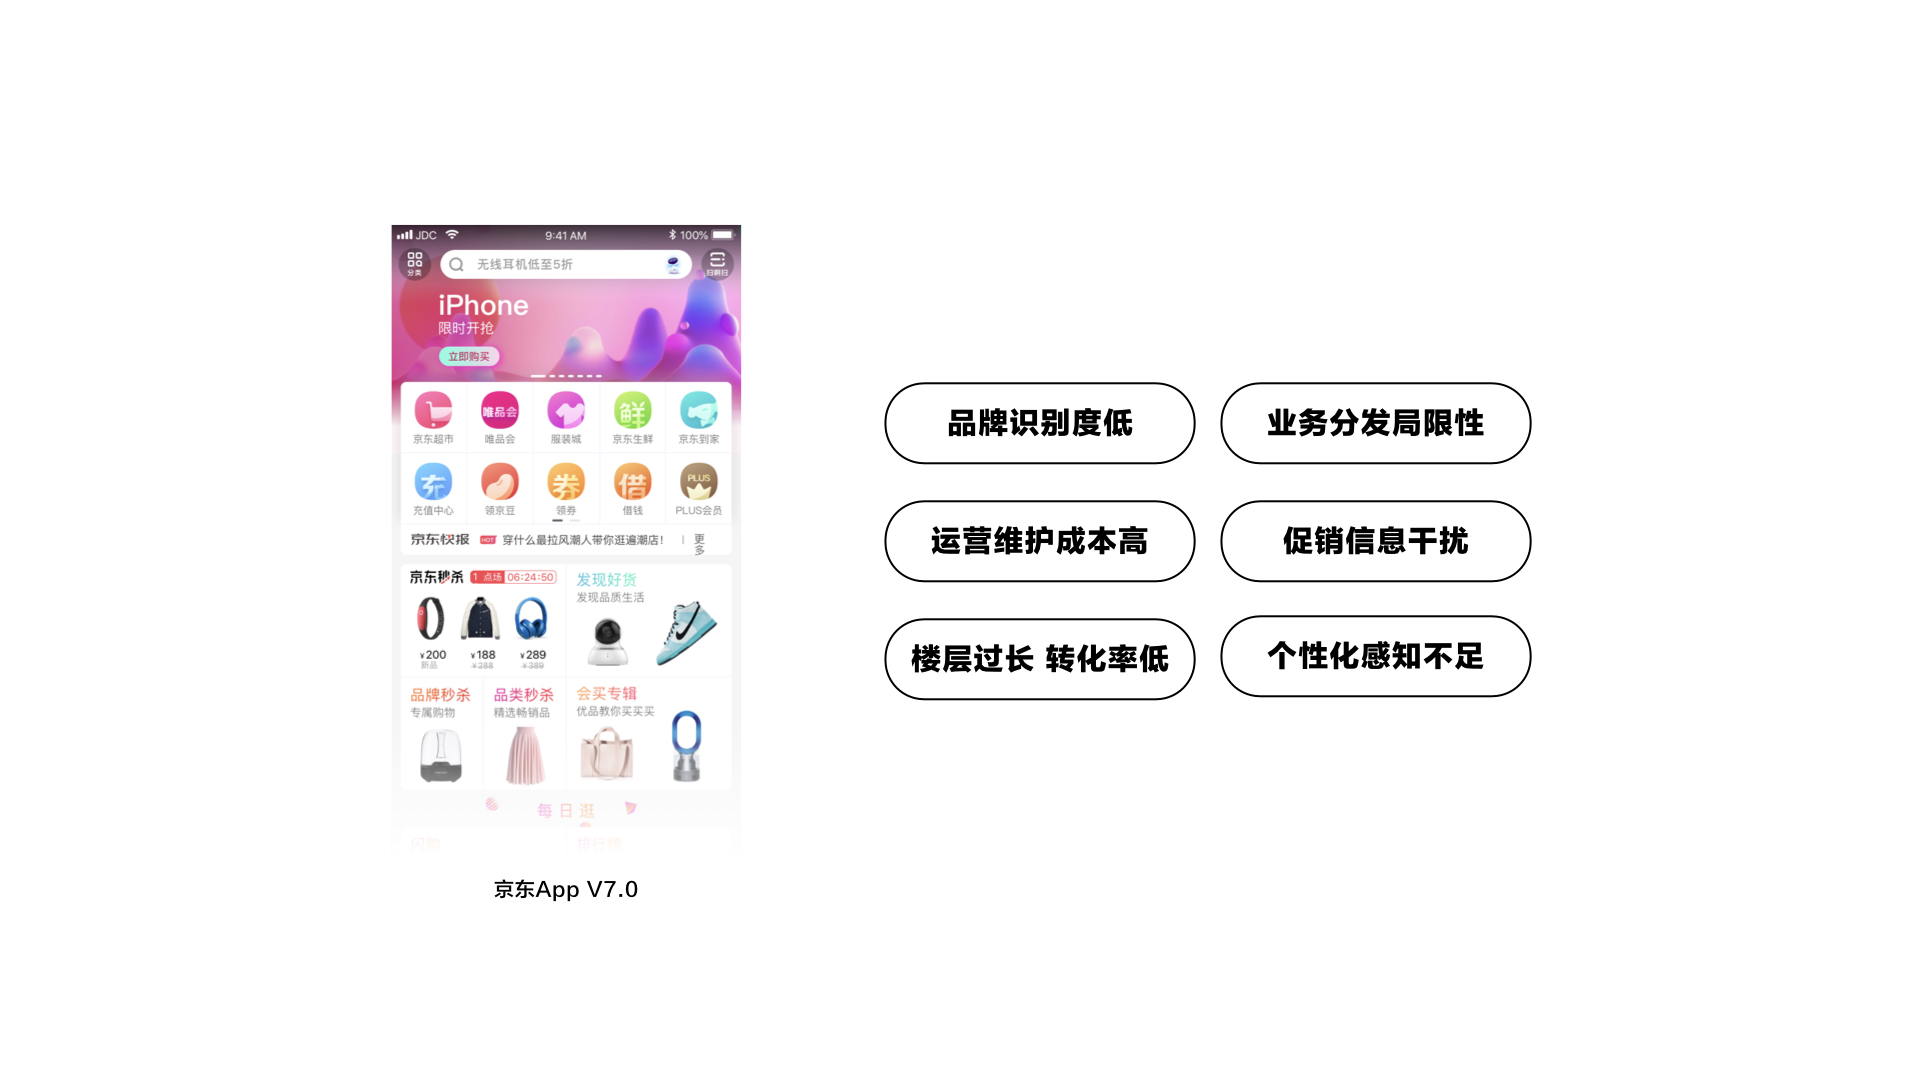 【京东JDC分享】用户界面中的品牌体验设计 - 图21